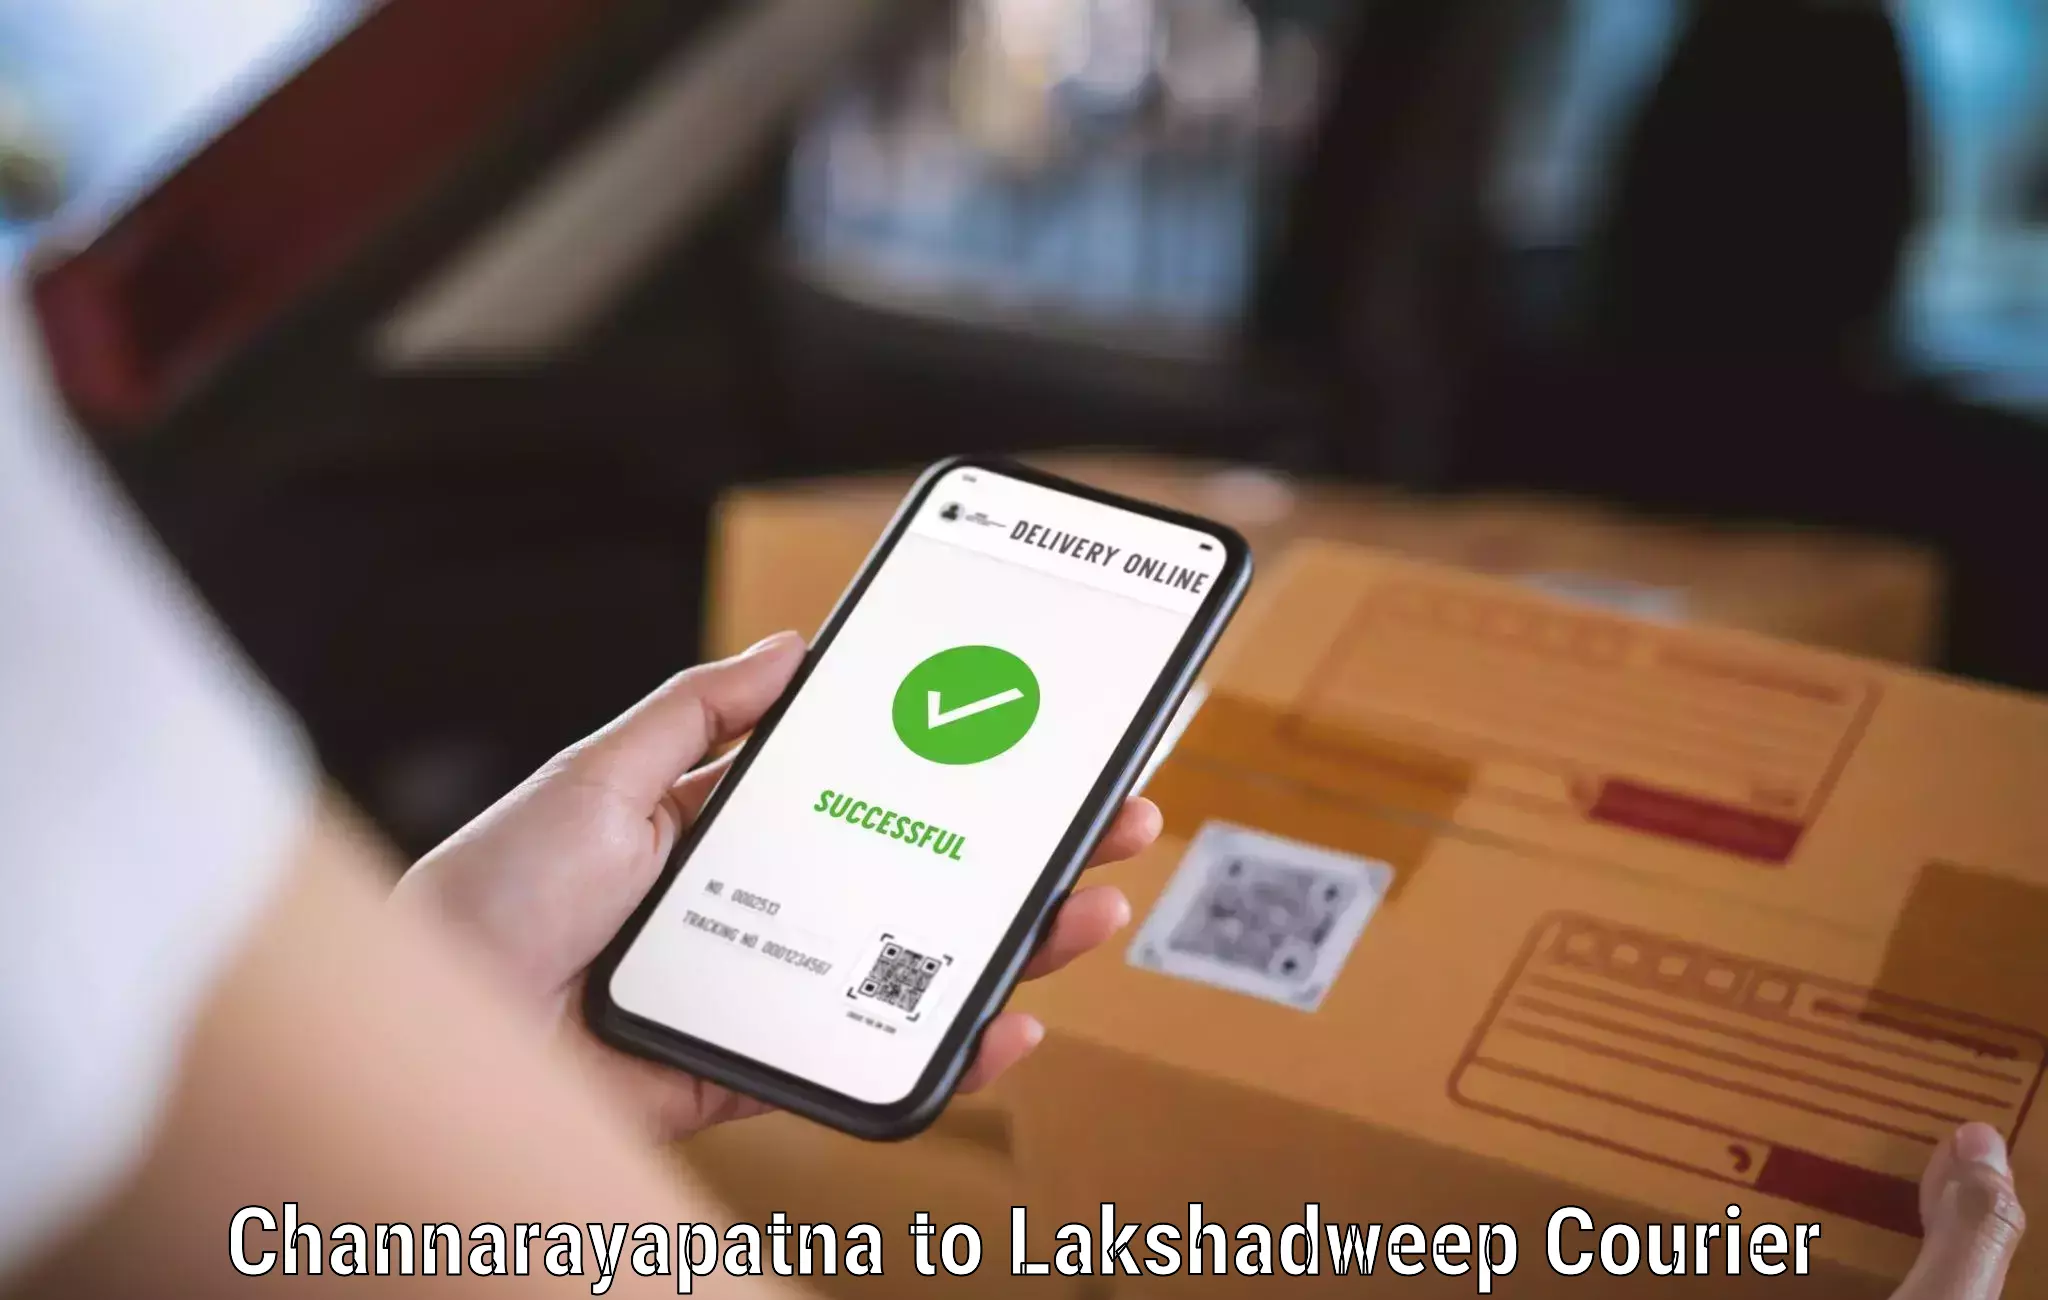 Package delivery network Channarayapatna to Lakshadweep